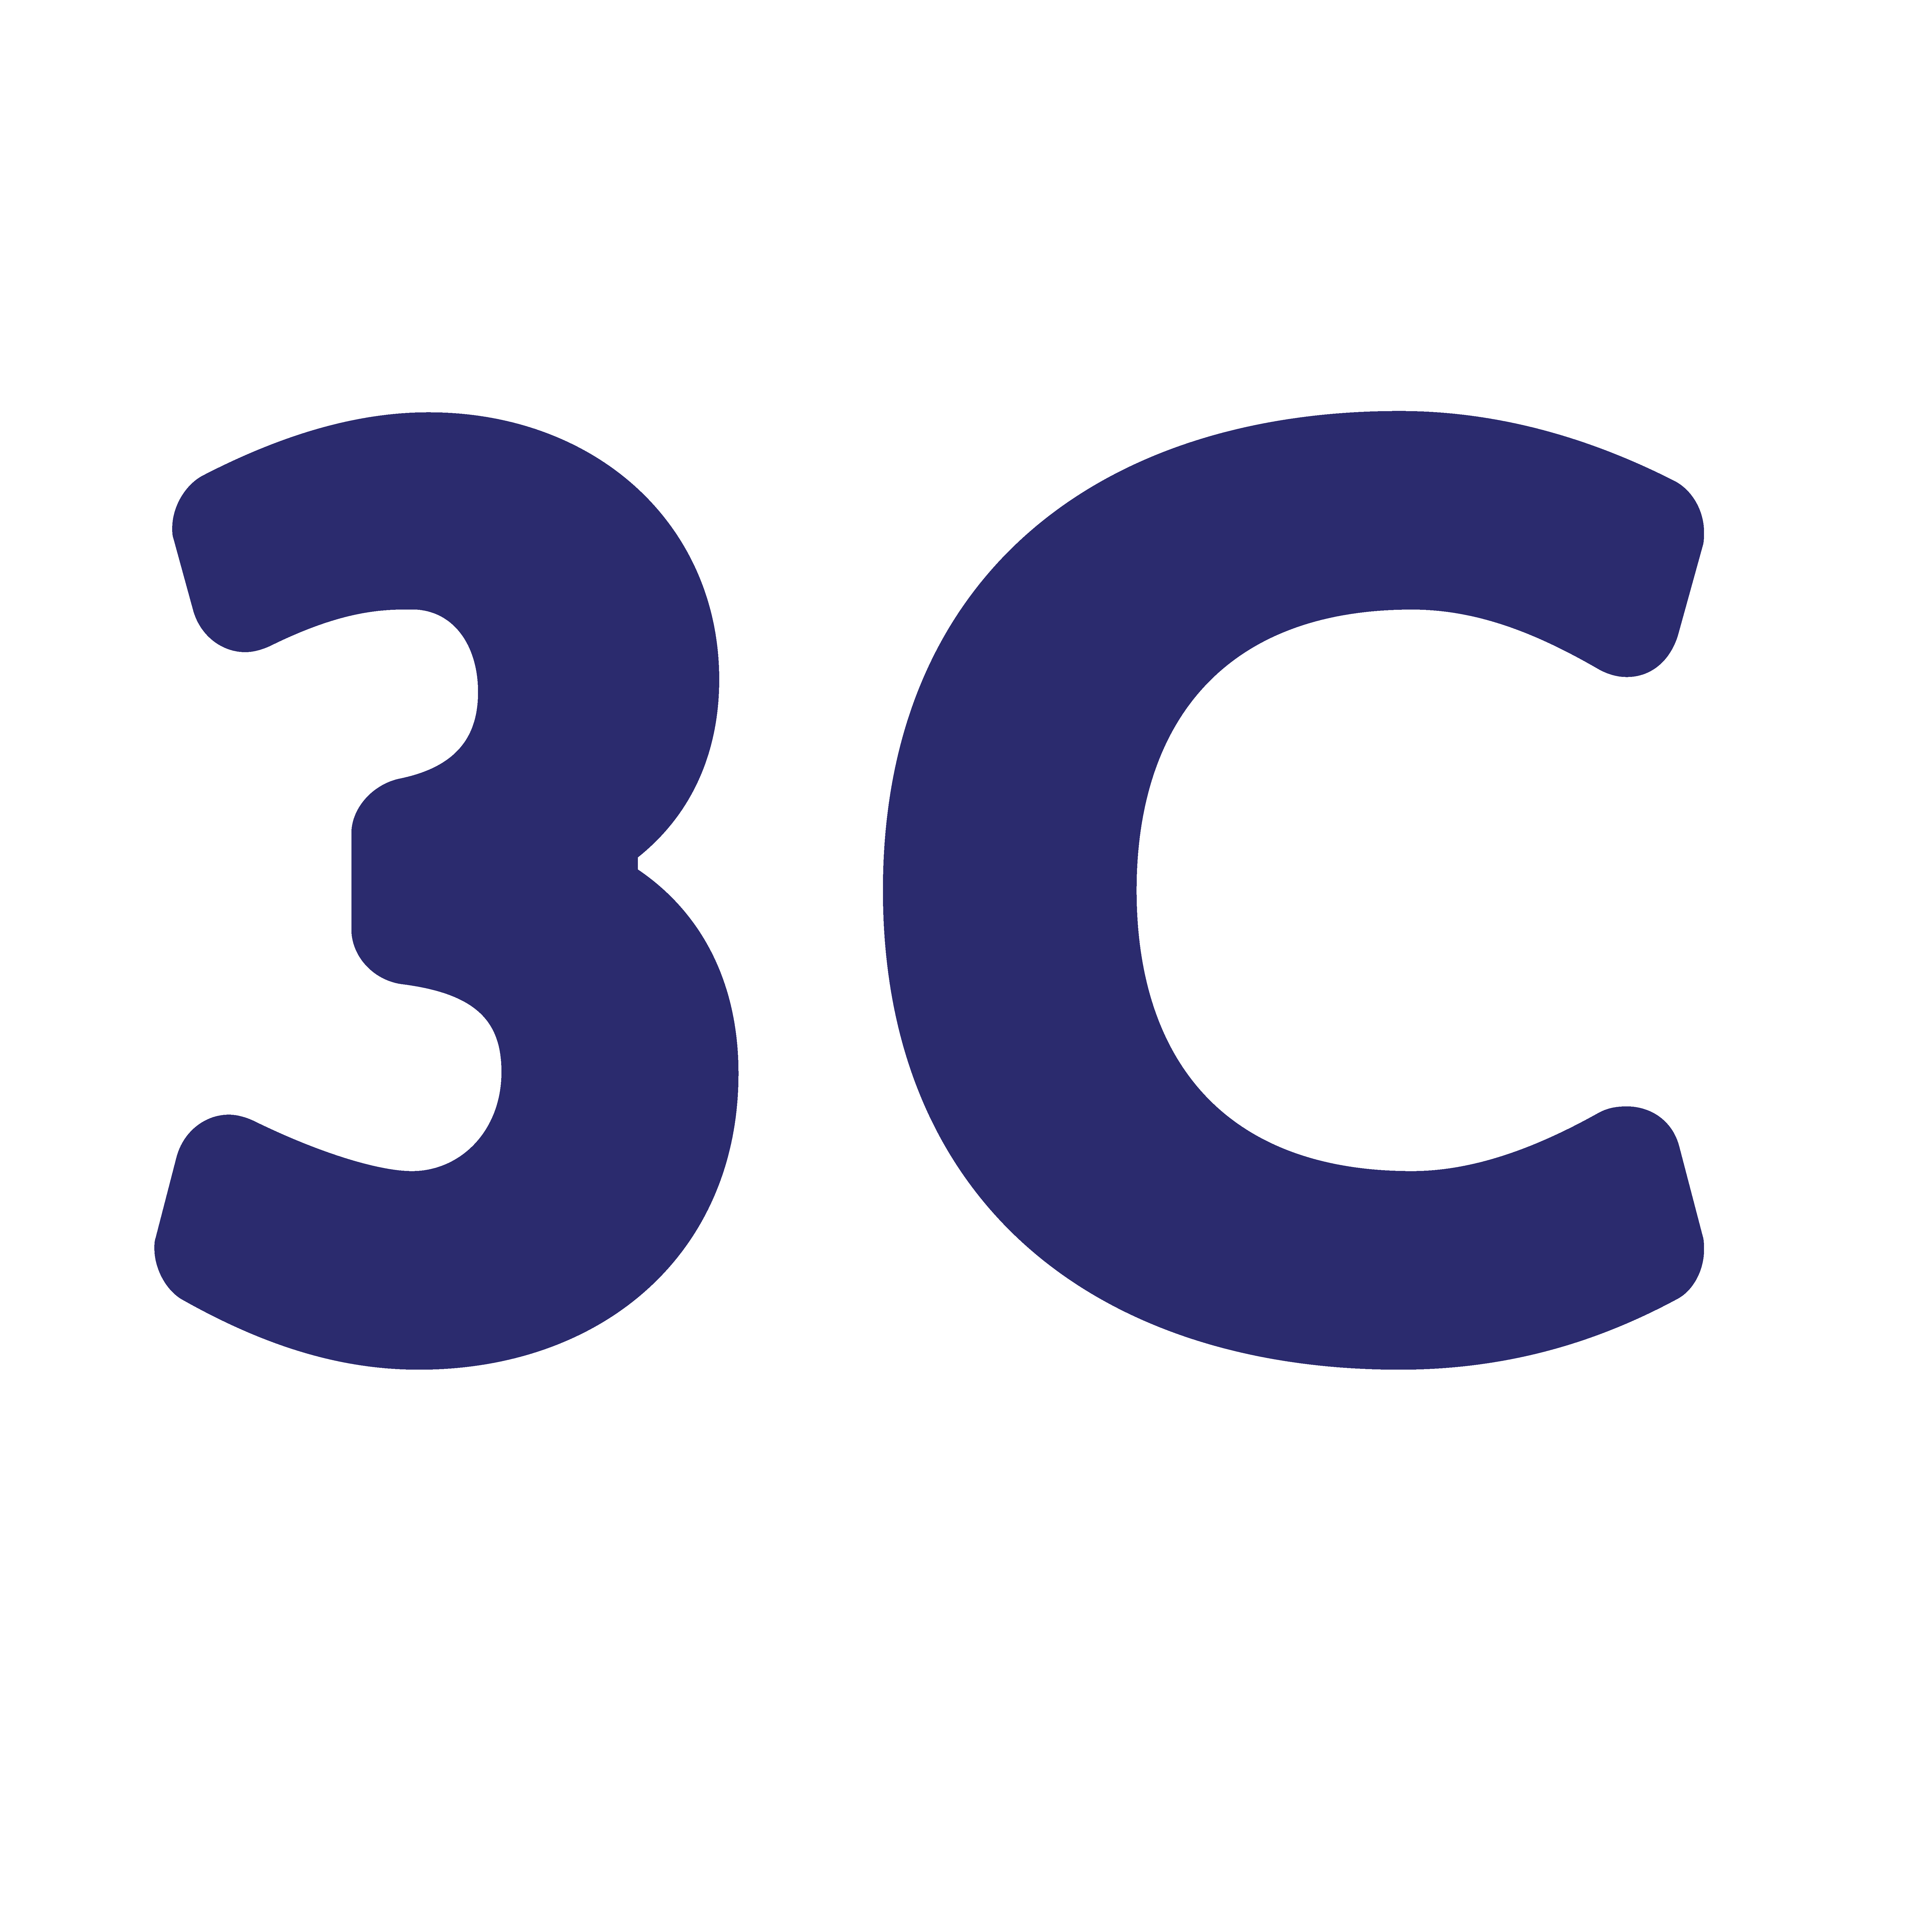 3C Logo - 3C - Energy Efficiency Global Forum